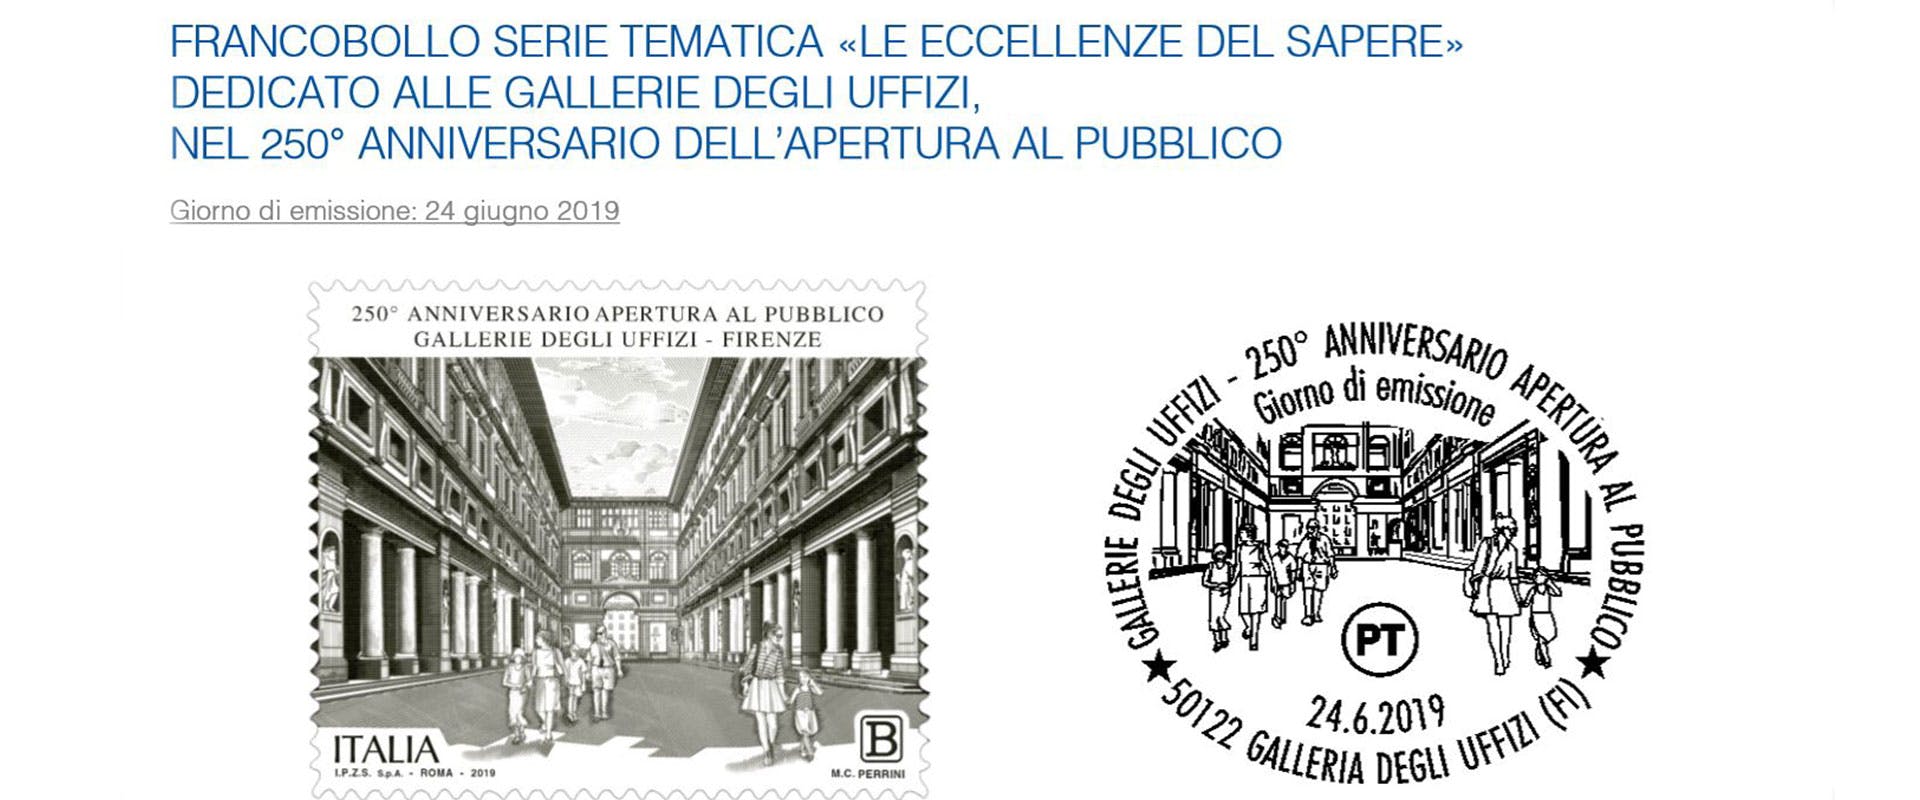 Un francobollo celebra i 250 anni di apertura degli Uffizi!